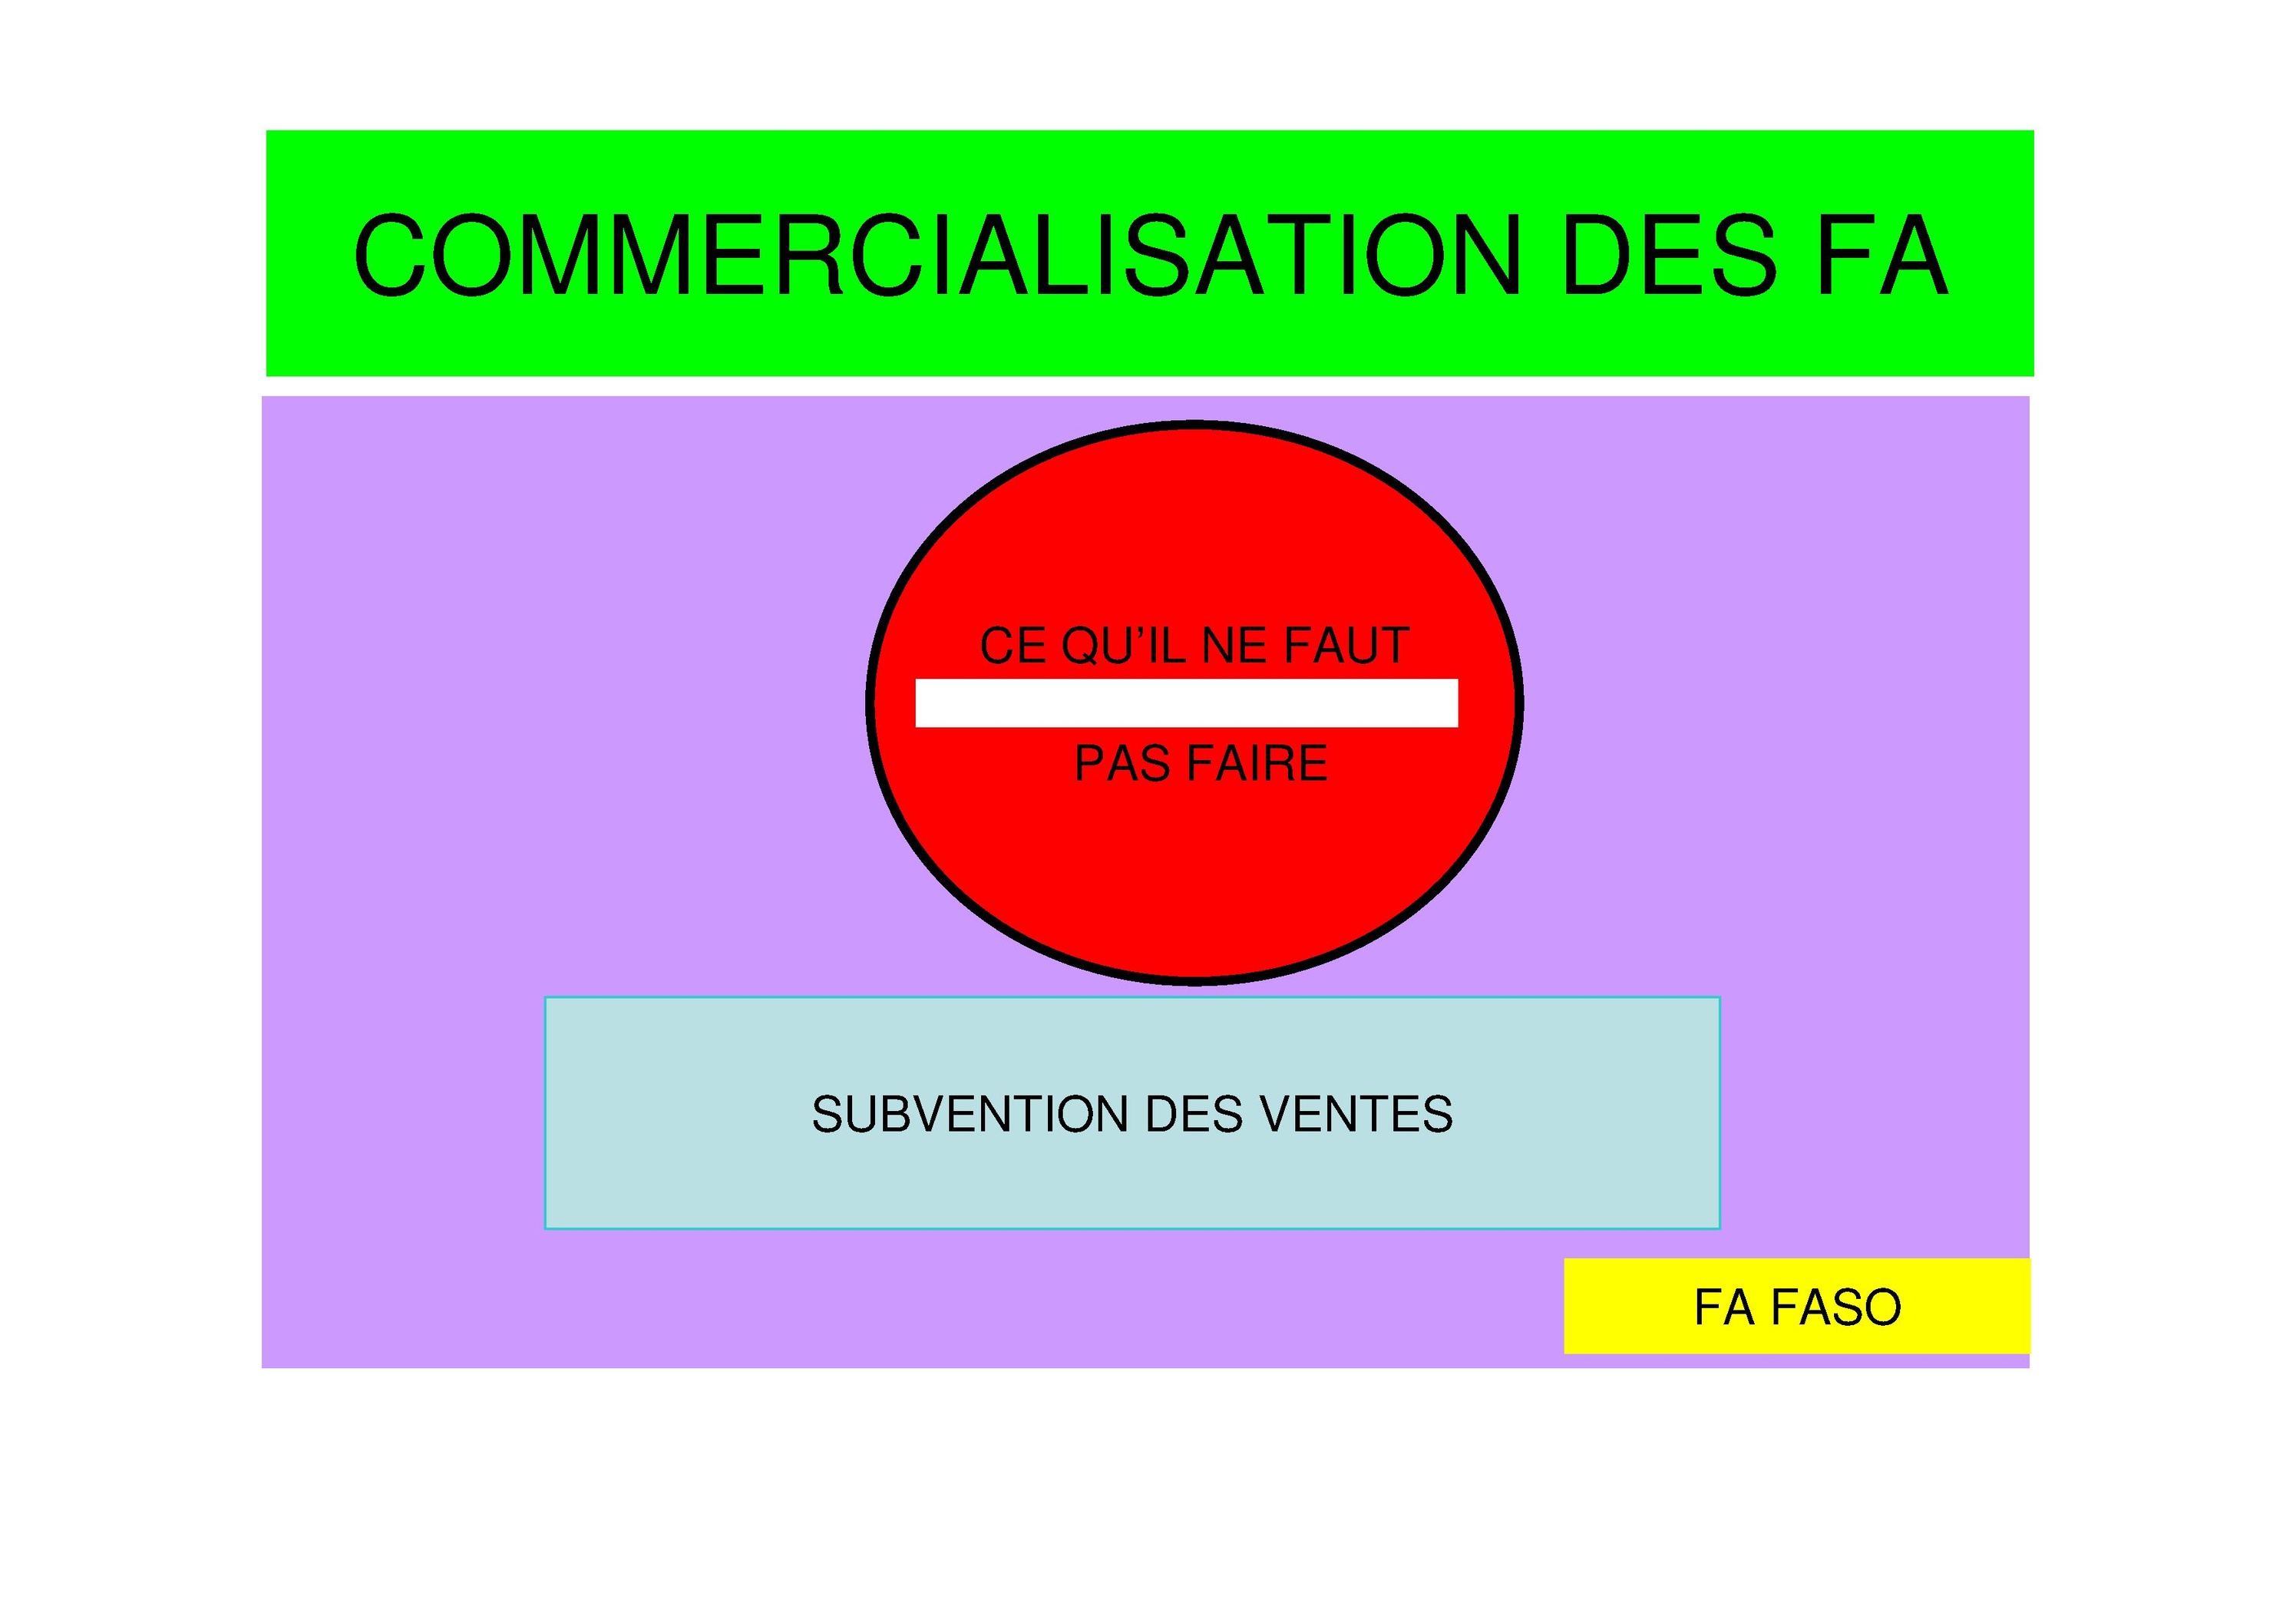 Commercialisation des fa a.pdf